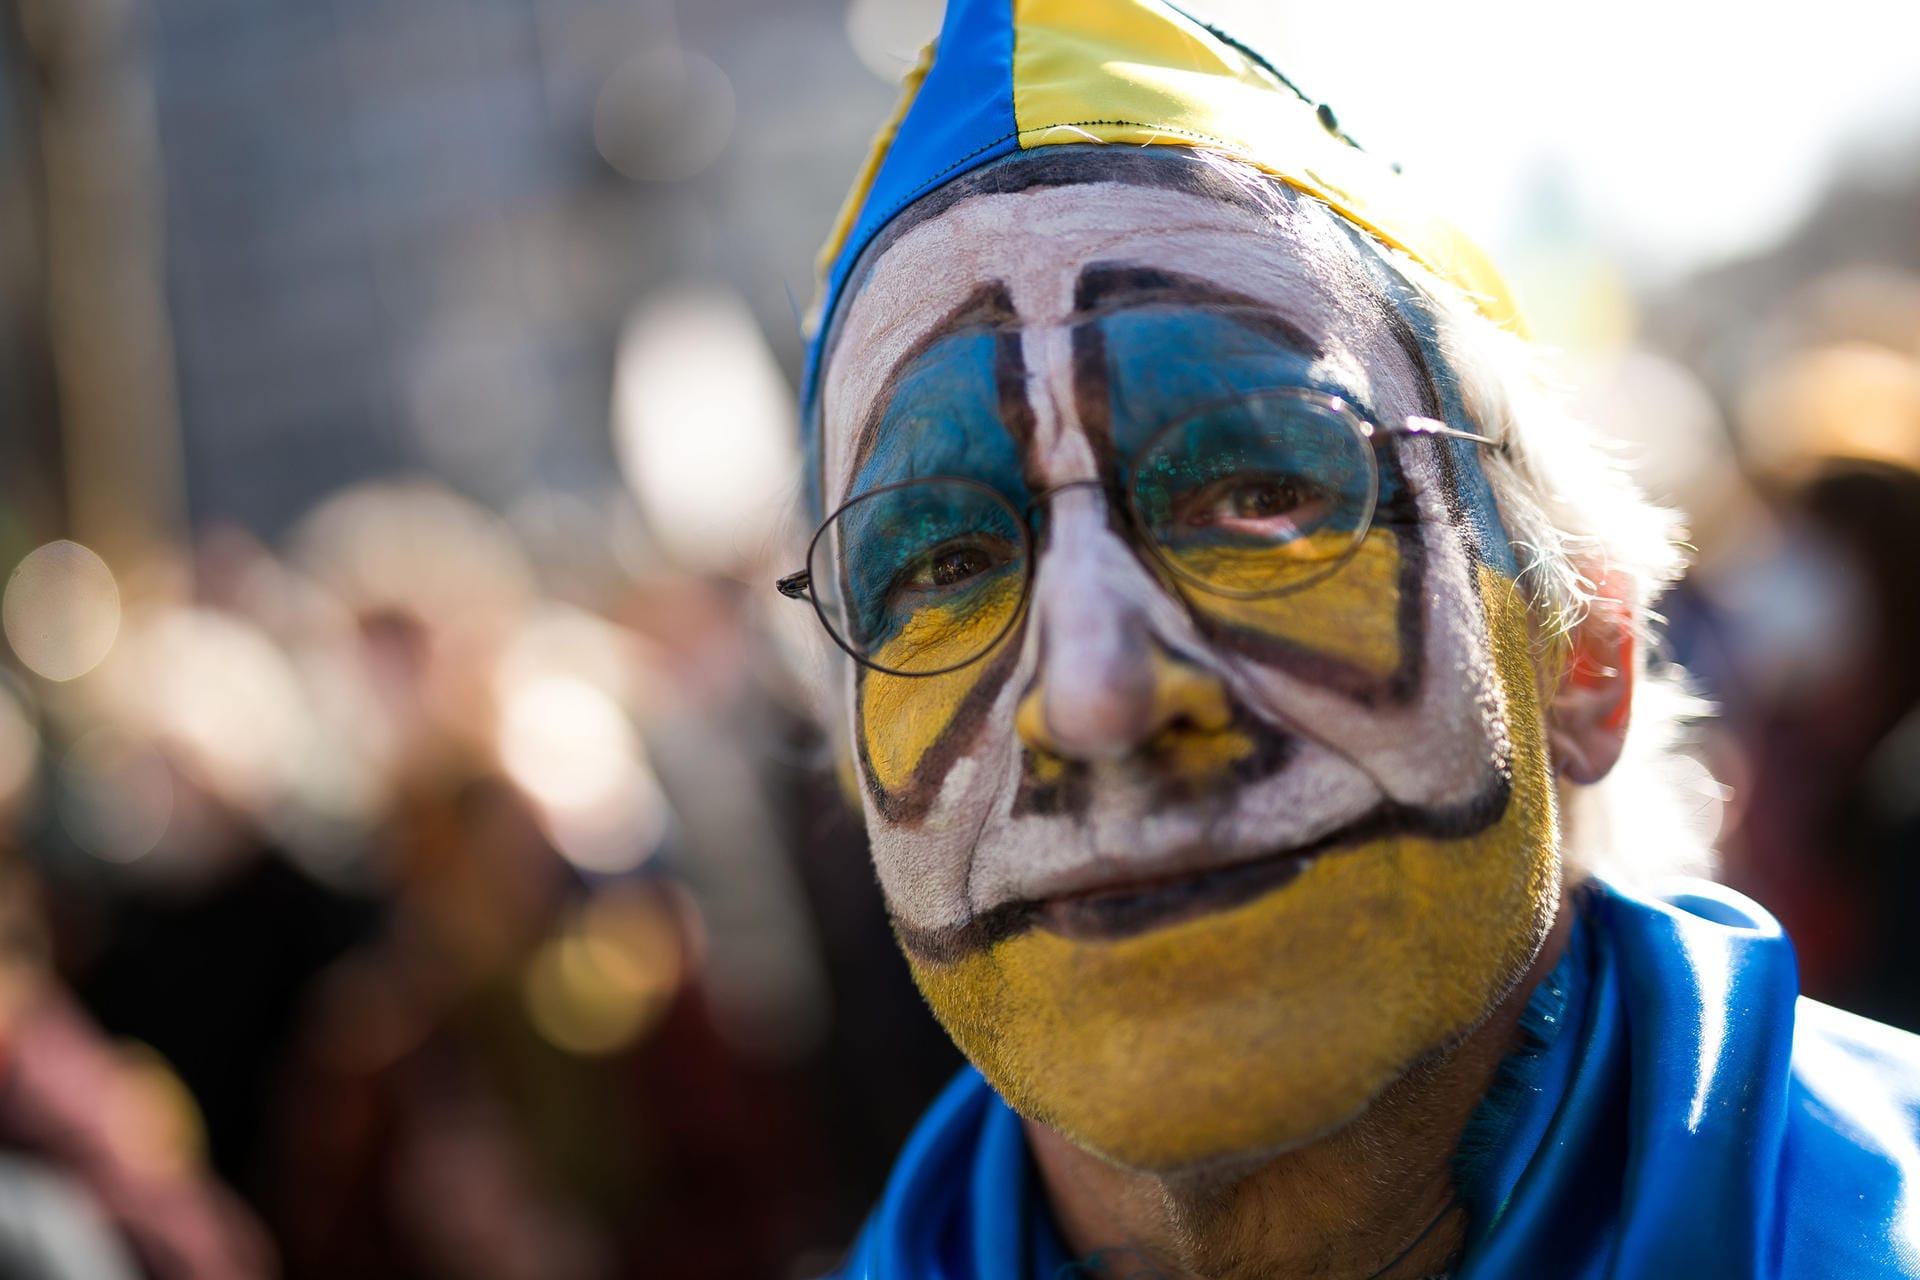 Kostümiert und zugleich positioniert: Dieser Karnevalist trägt die Farben der Ukraine im Gesicht.